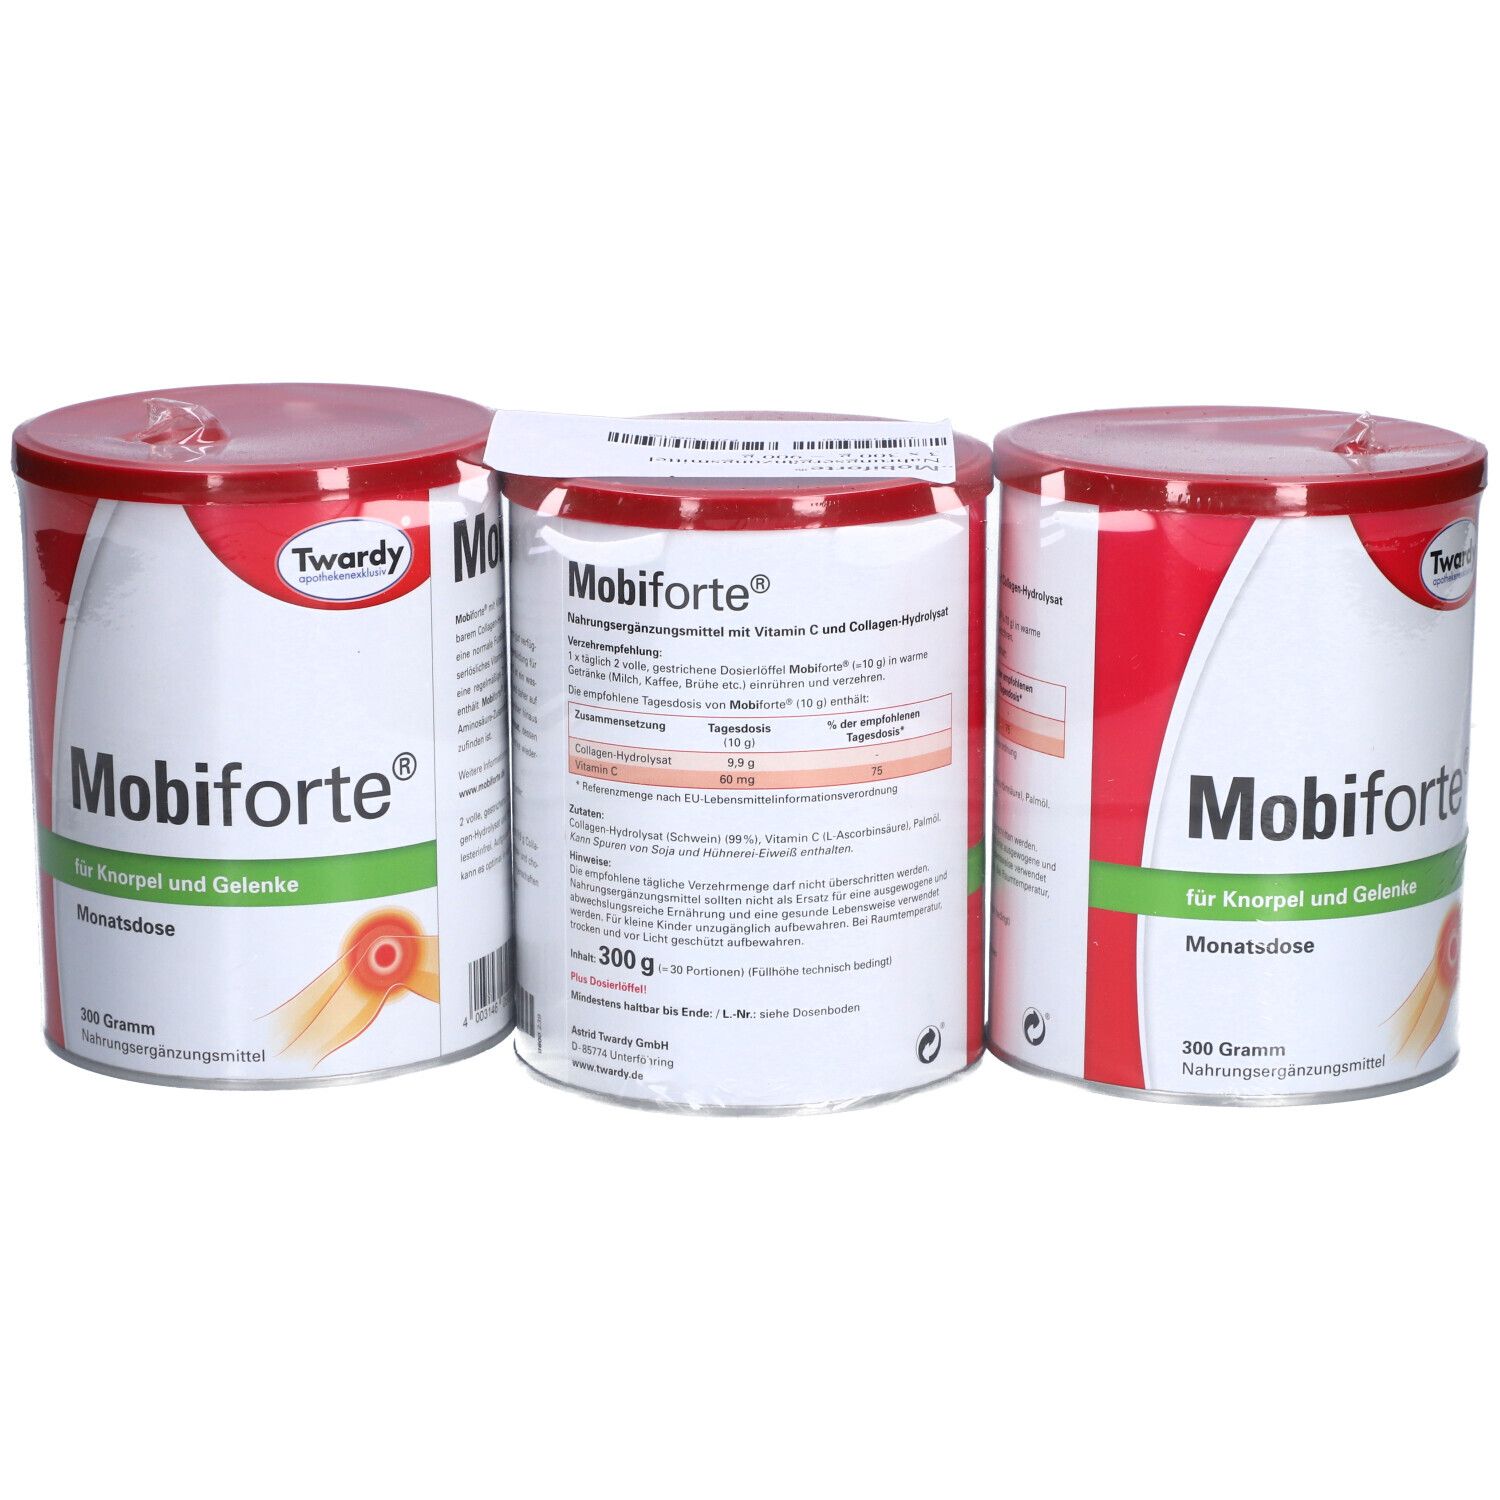 Twardy® Mobiforte® Collagen-Hydrolysat Pulver